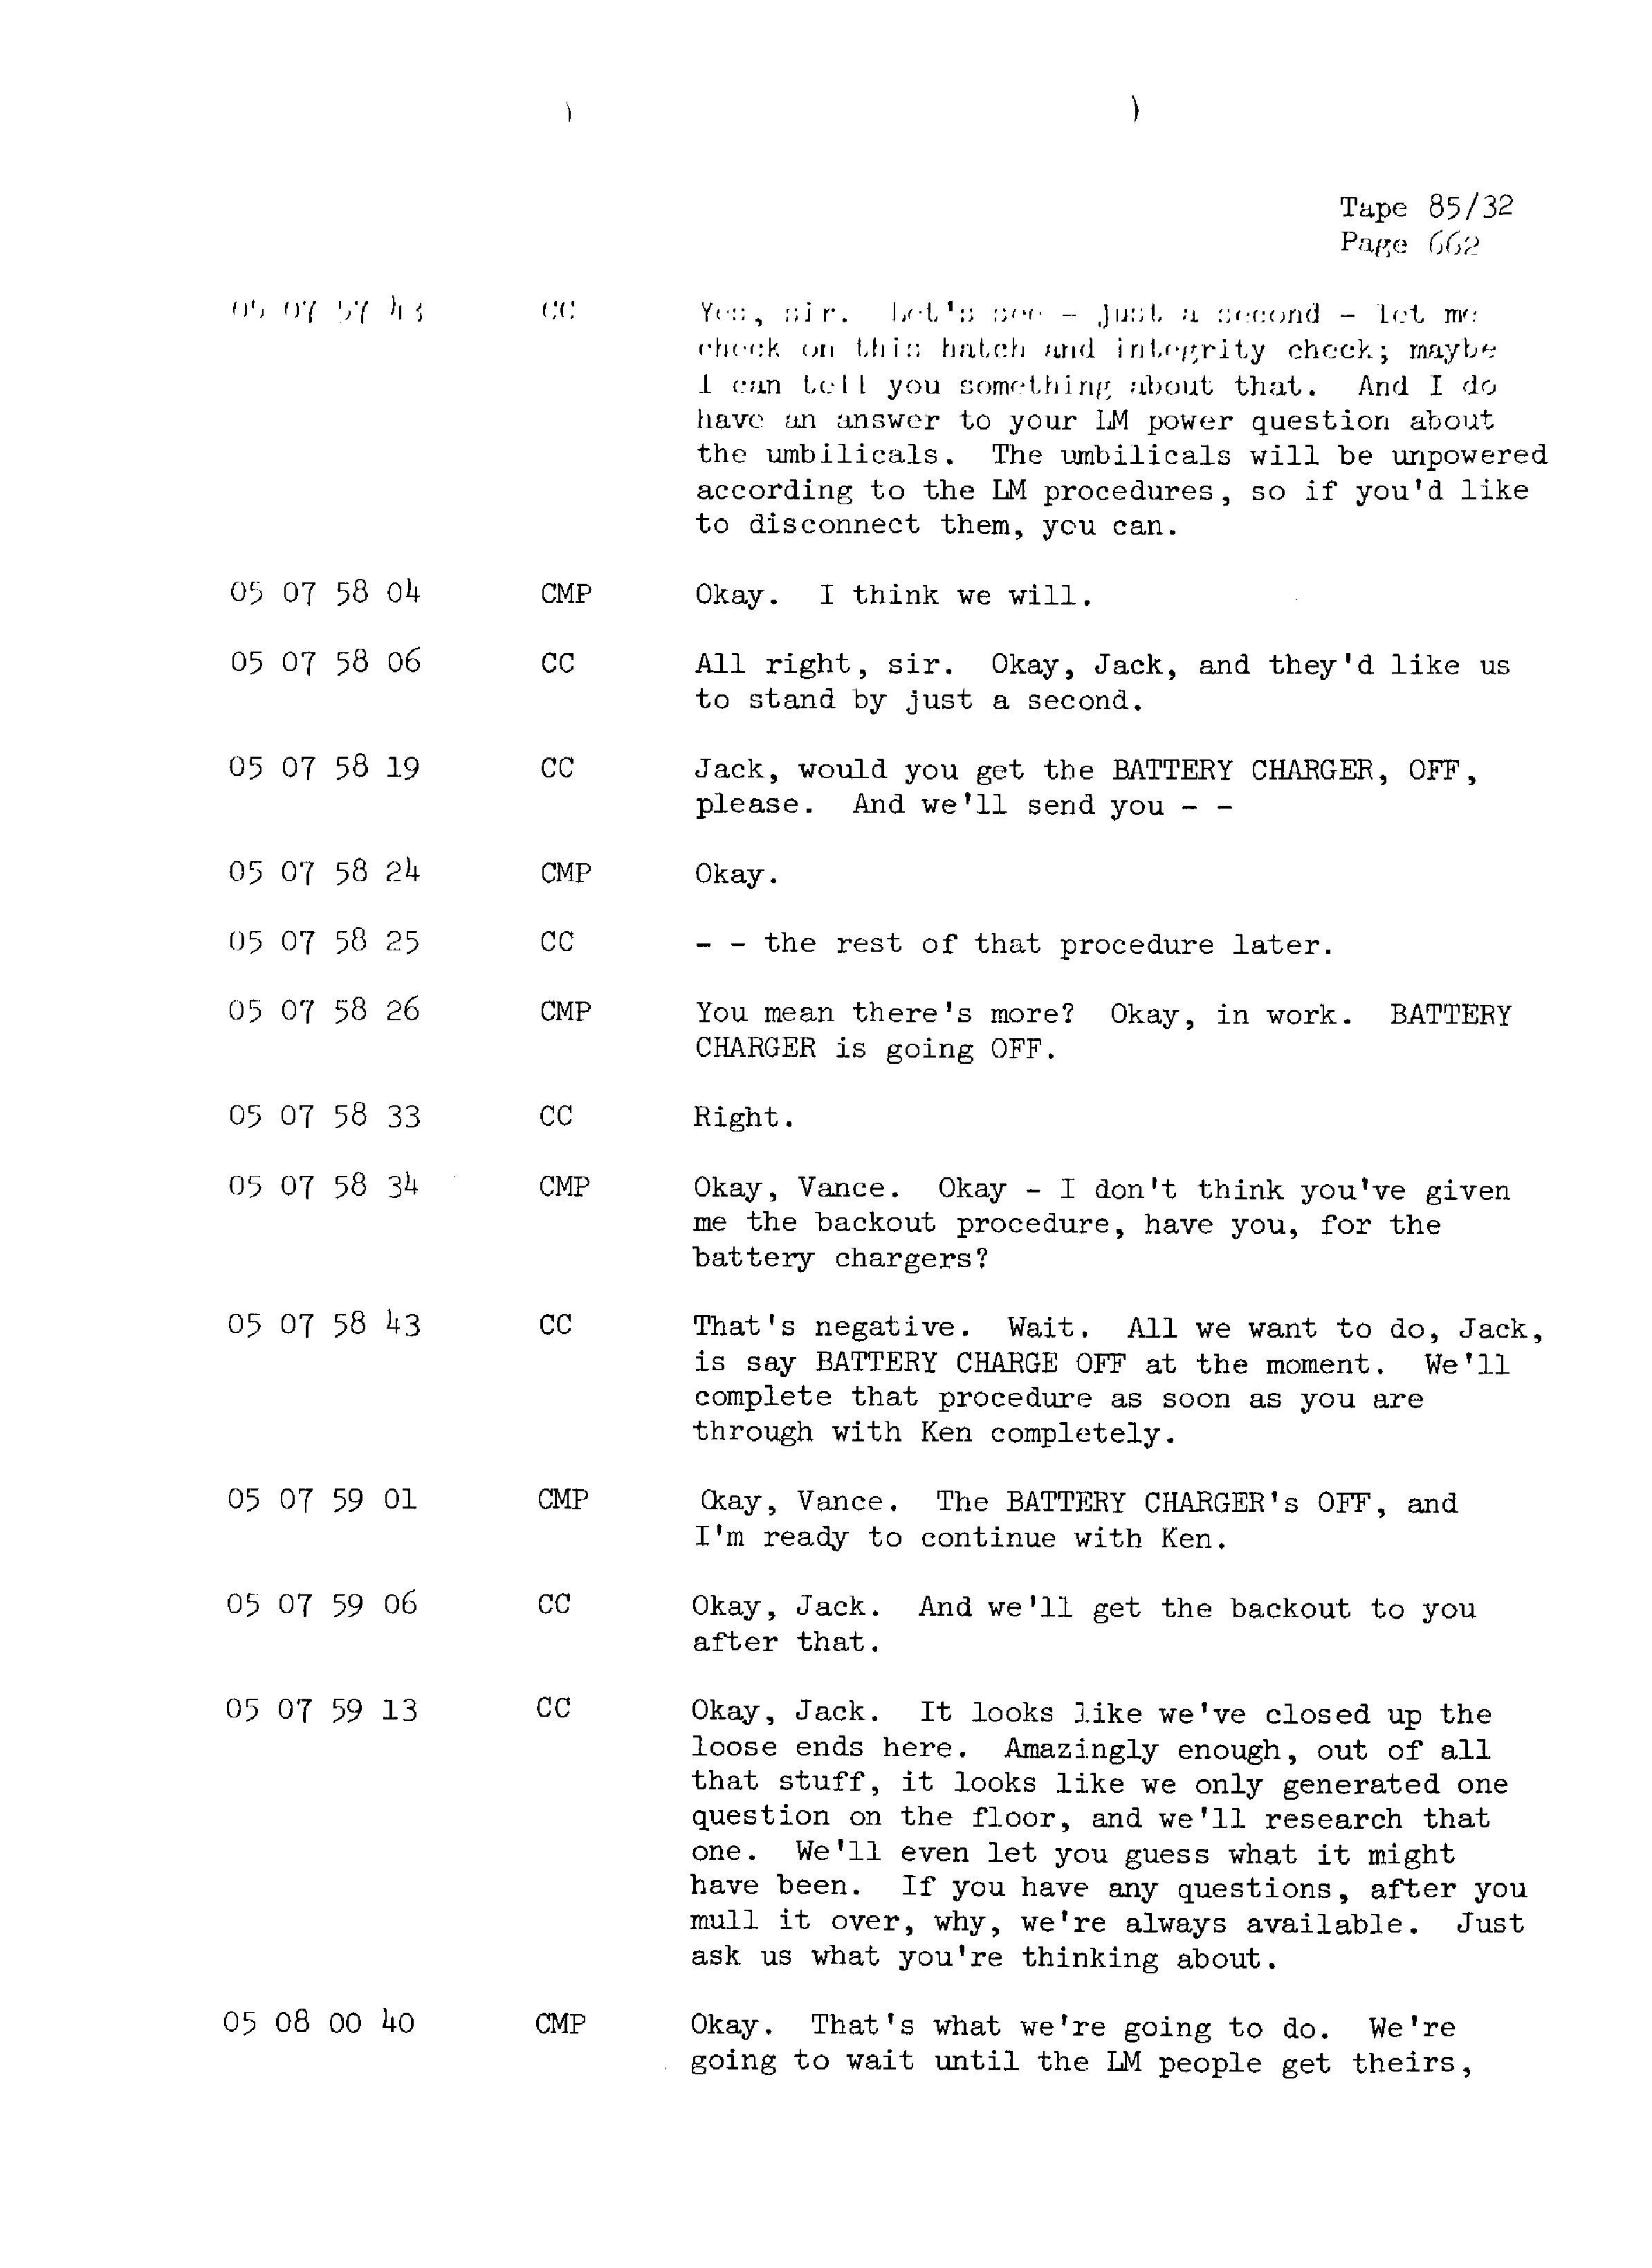 Page 669 of Apollo 13’s original transcript